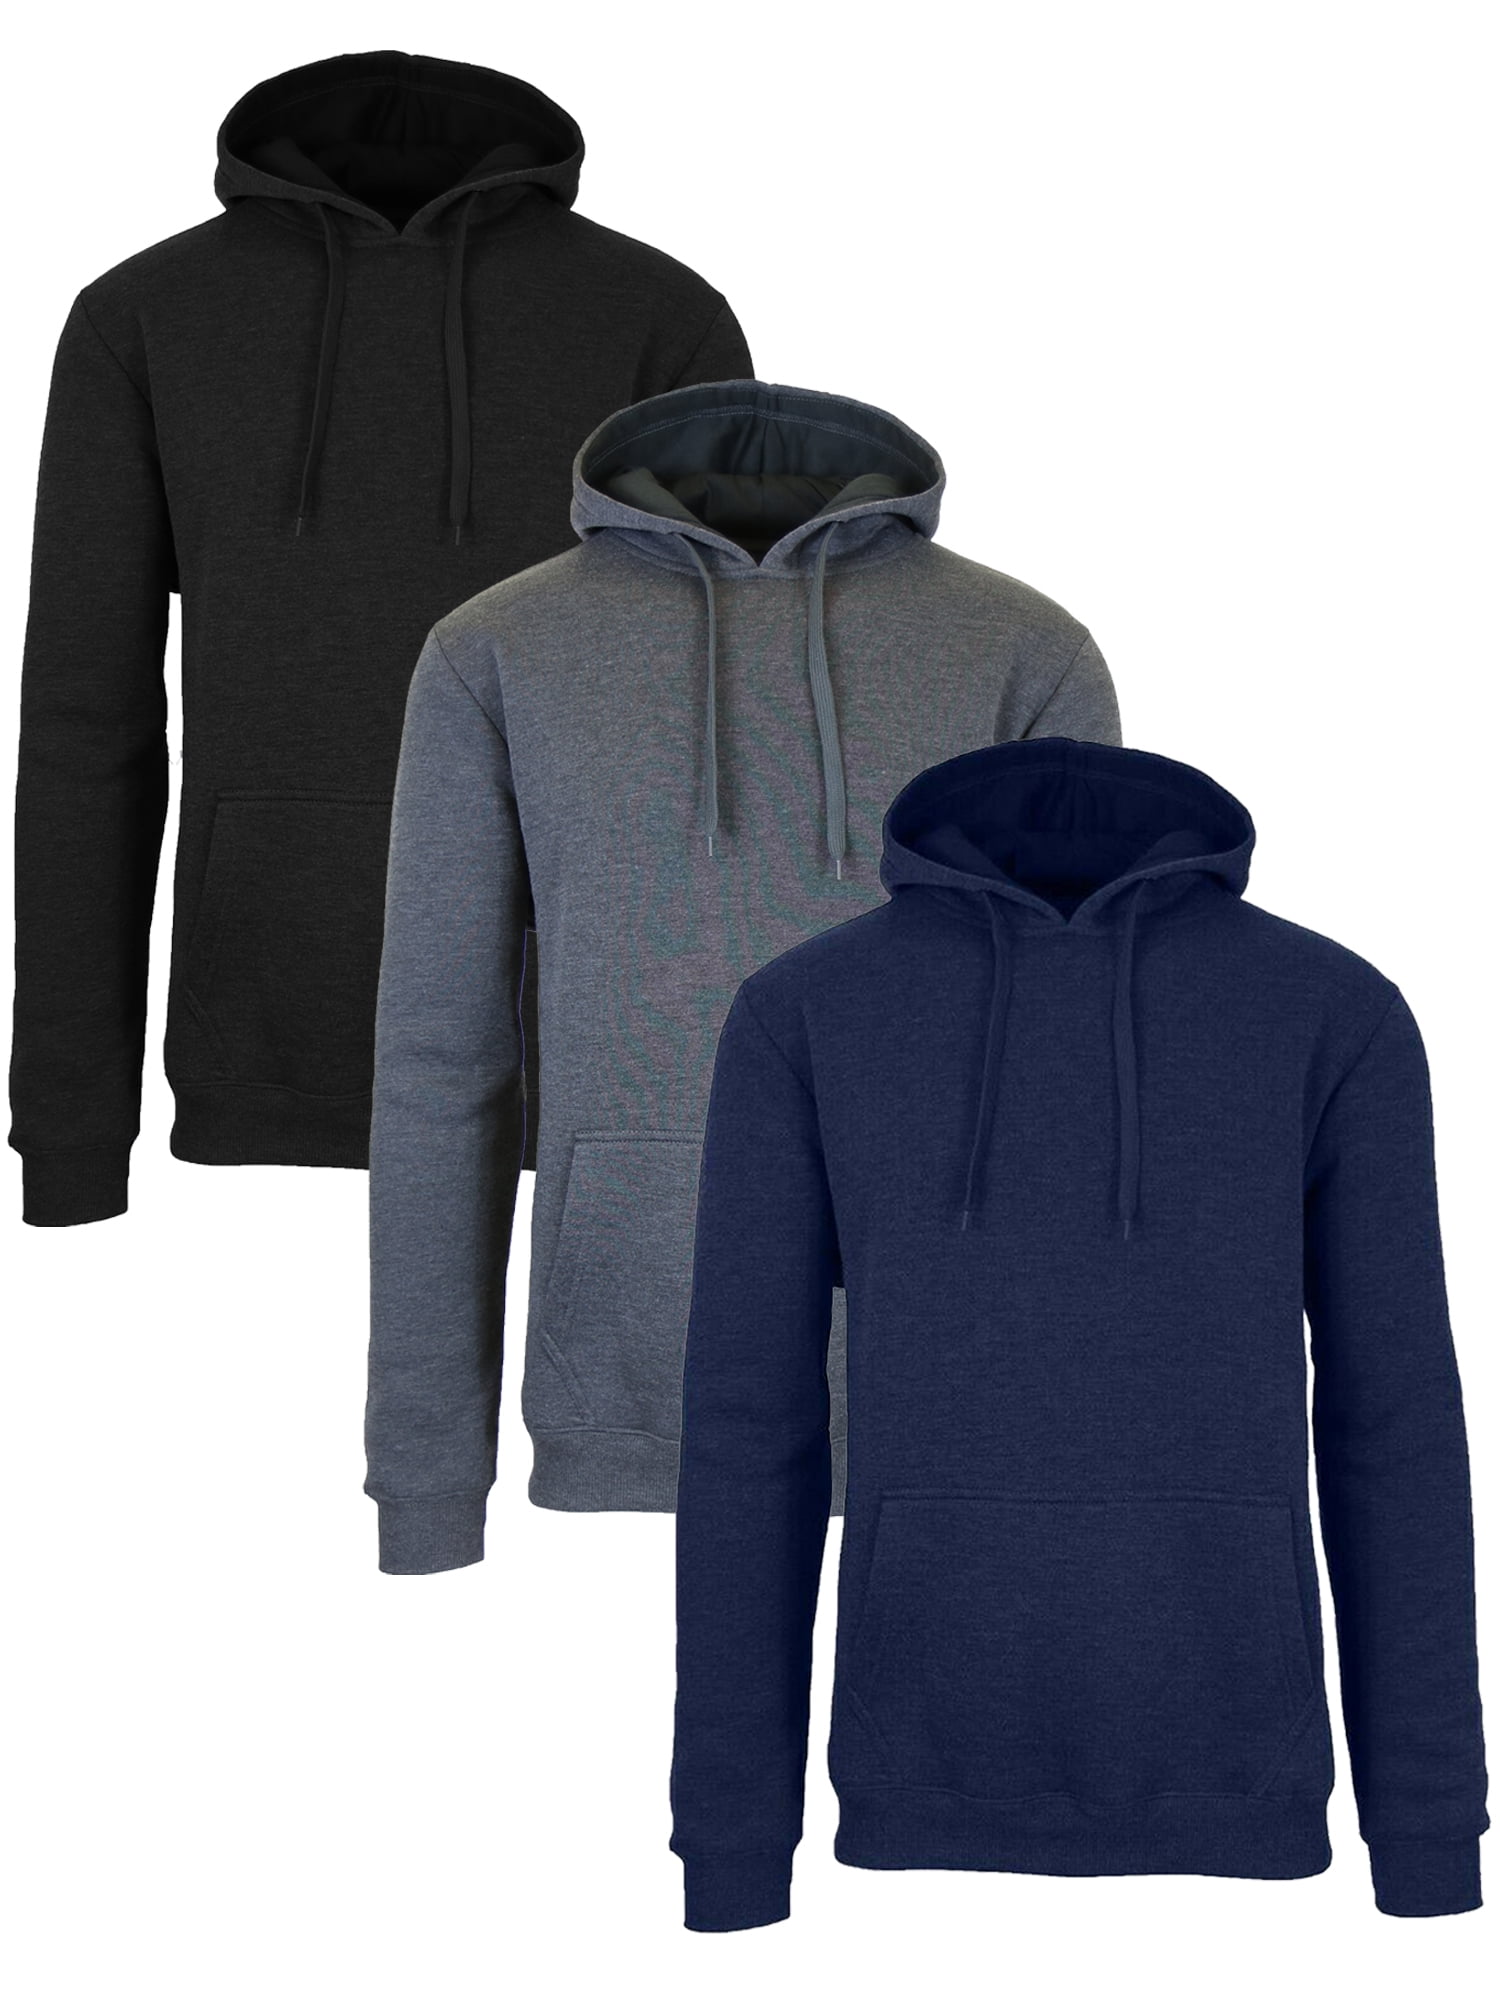 Men's Fleece-Lined Pullover Hoodie Sweatshirts (3-Pack) - Walmart.com